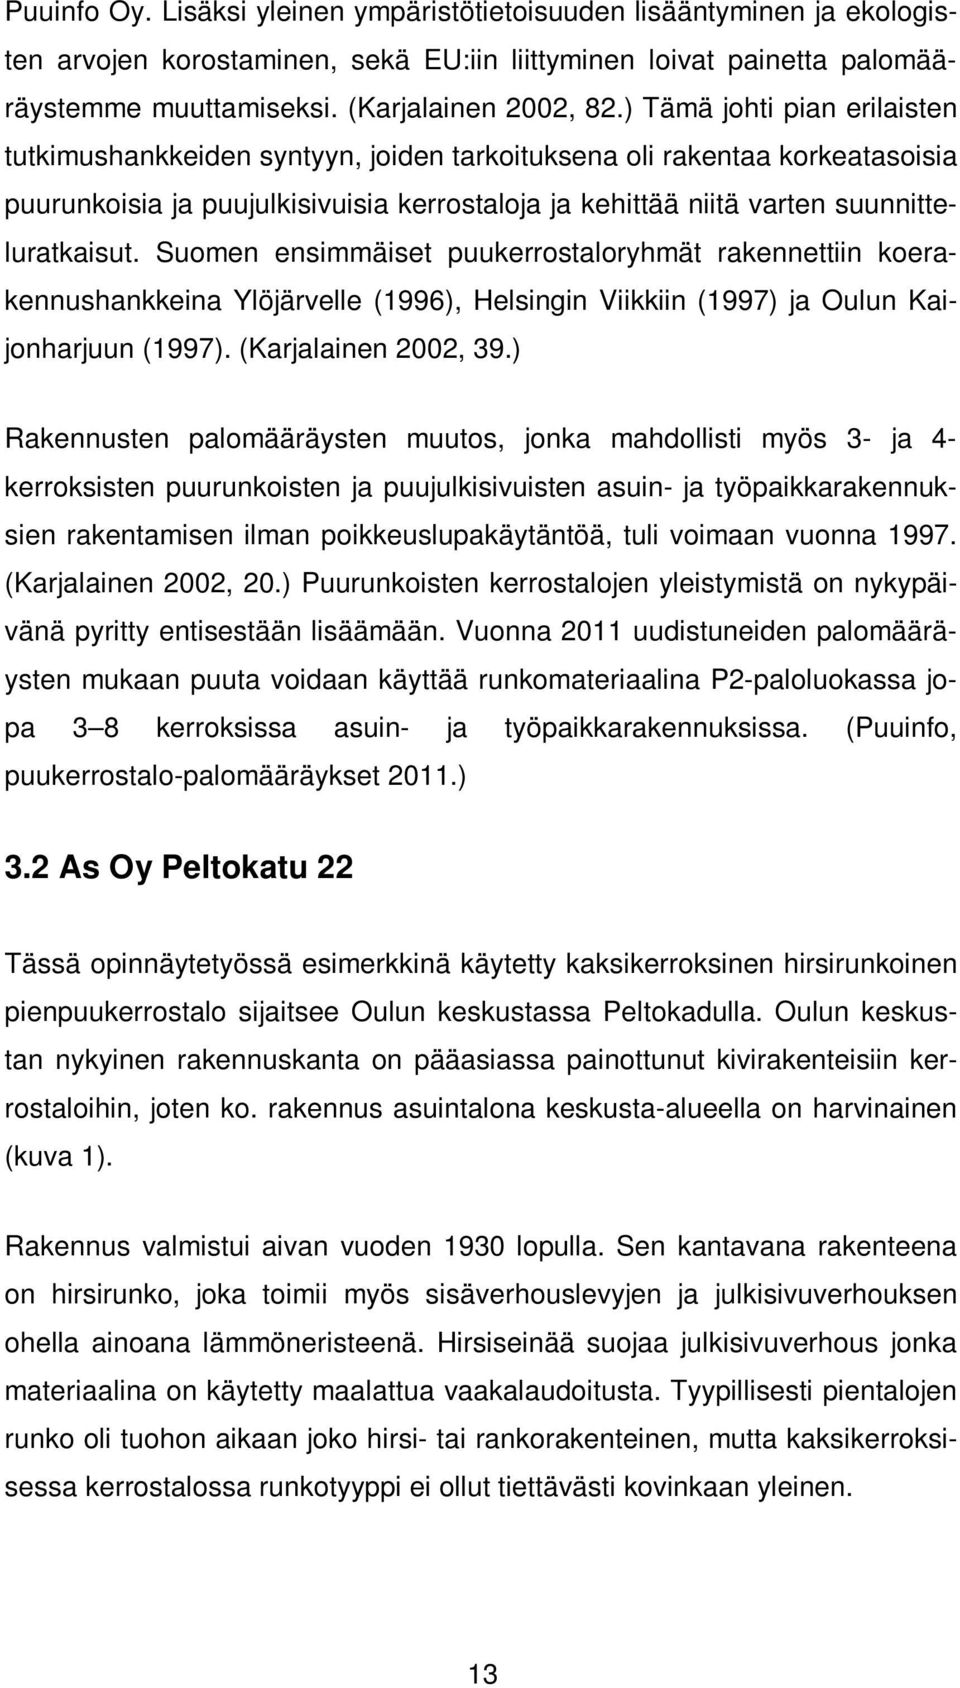 Suomen ensimmäiset puukerrostaloryhmät rakennettiin koerakennushankkeina Ylöjärvelle (1996), Helsingin Viikkiin (1997) ja Oulun Kaijonharjuun (1997). (Karjalainen 2002, 39.